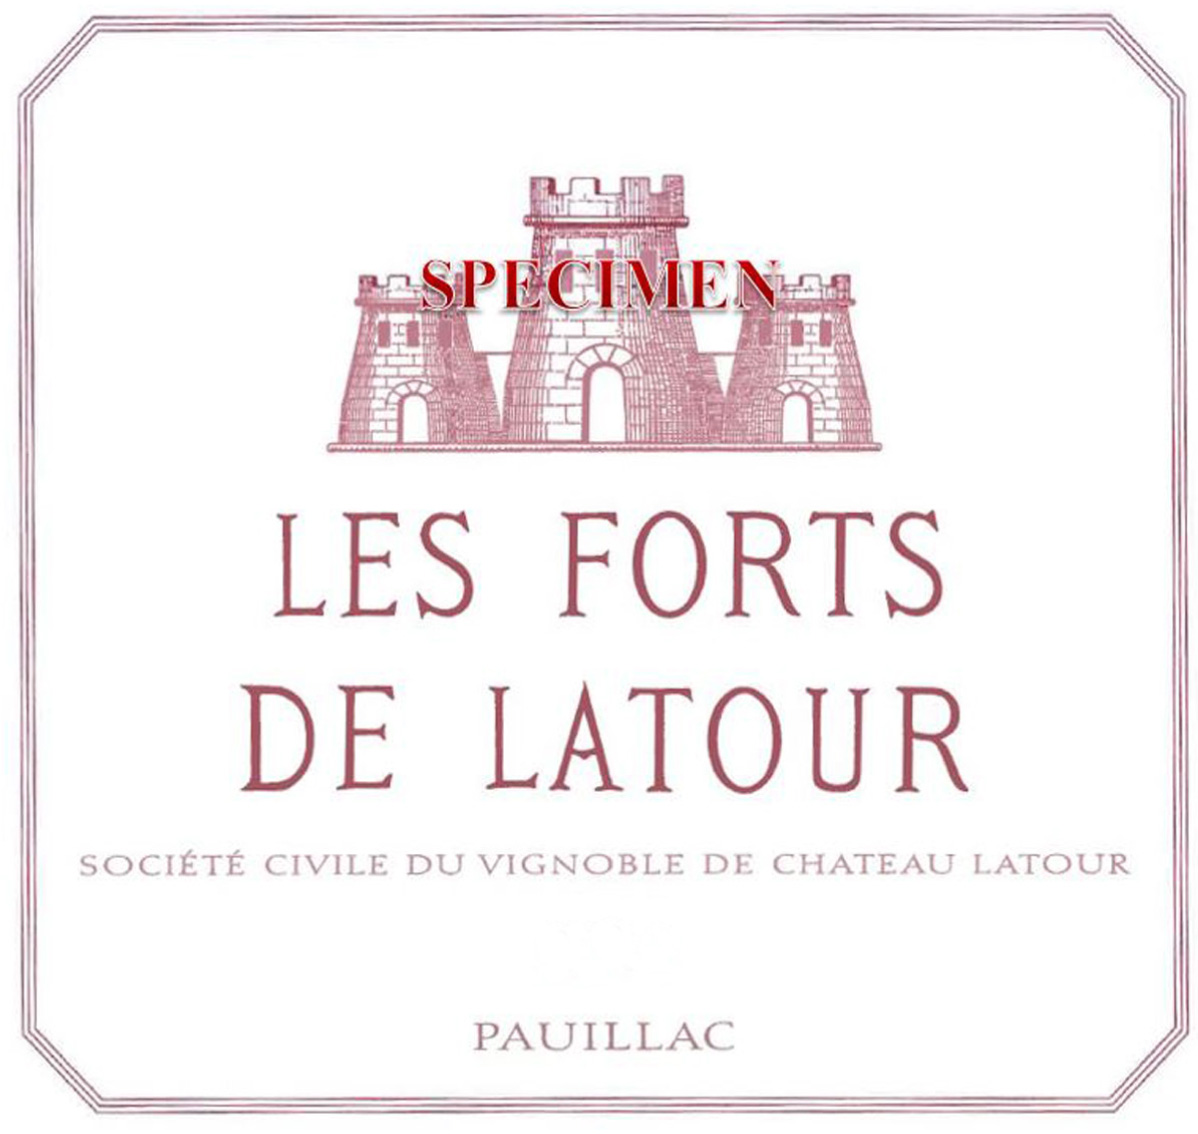 Les Forts de Latour label